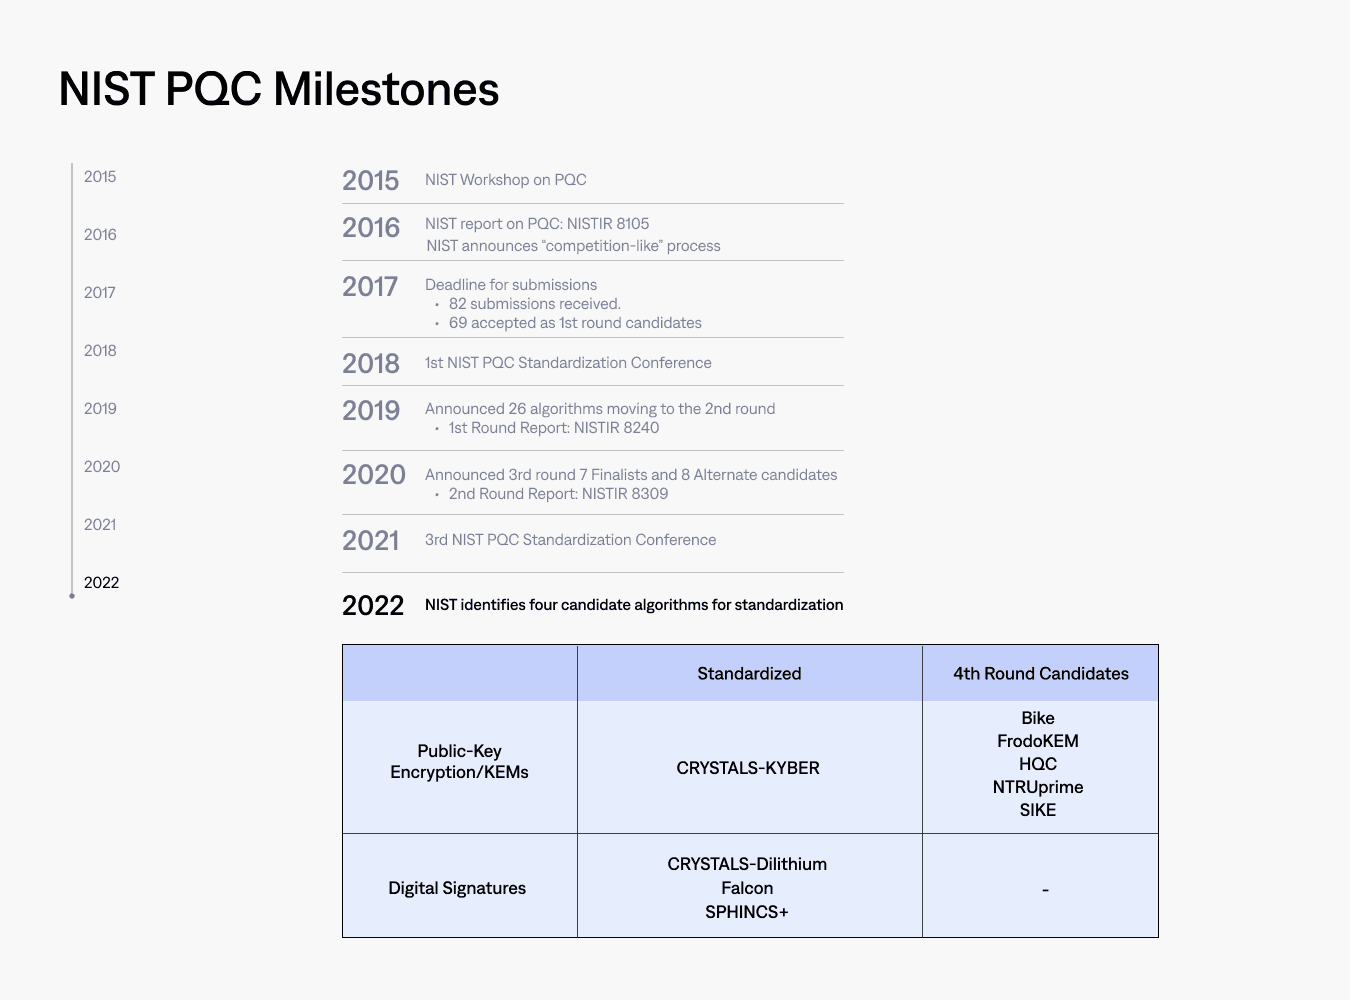 NIST PQC Milestones